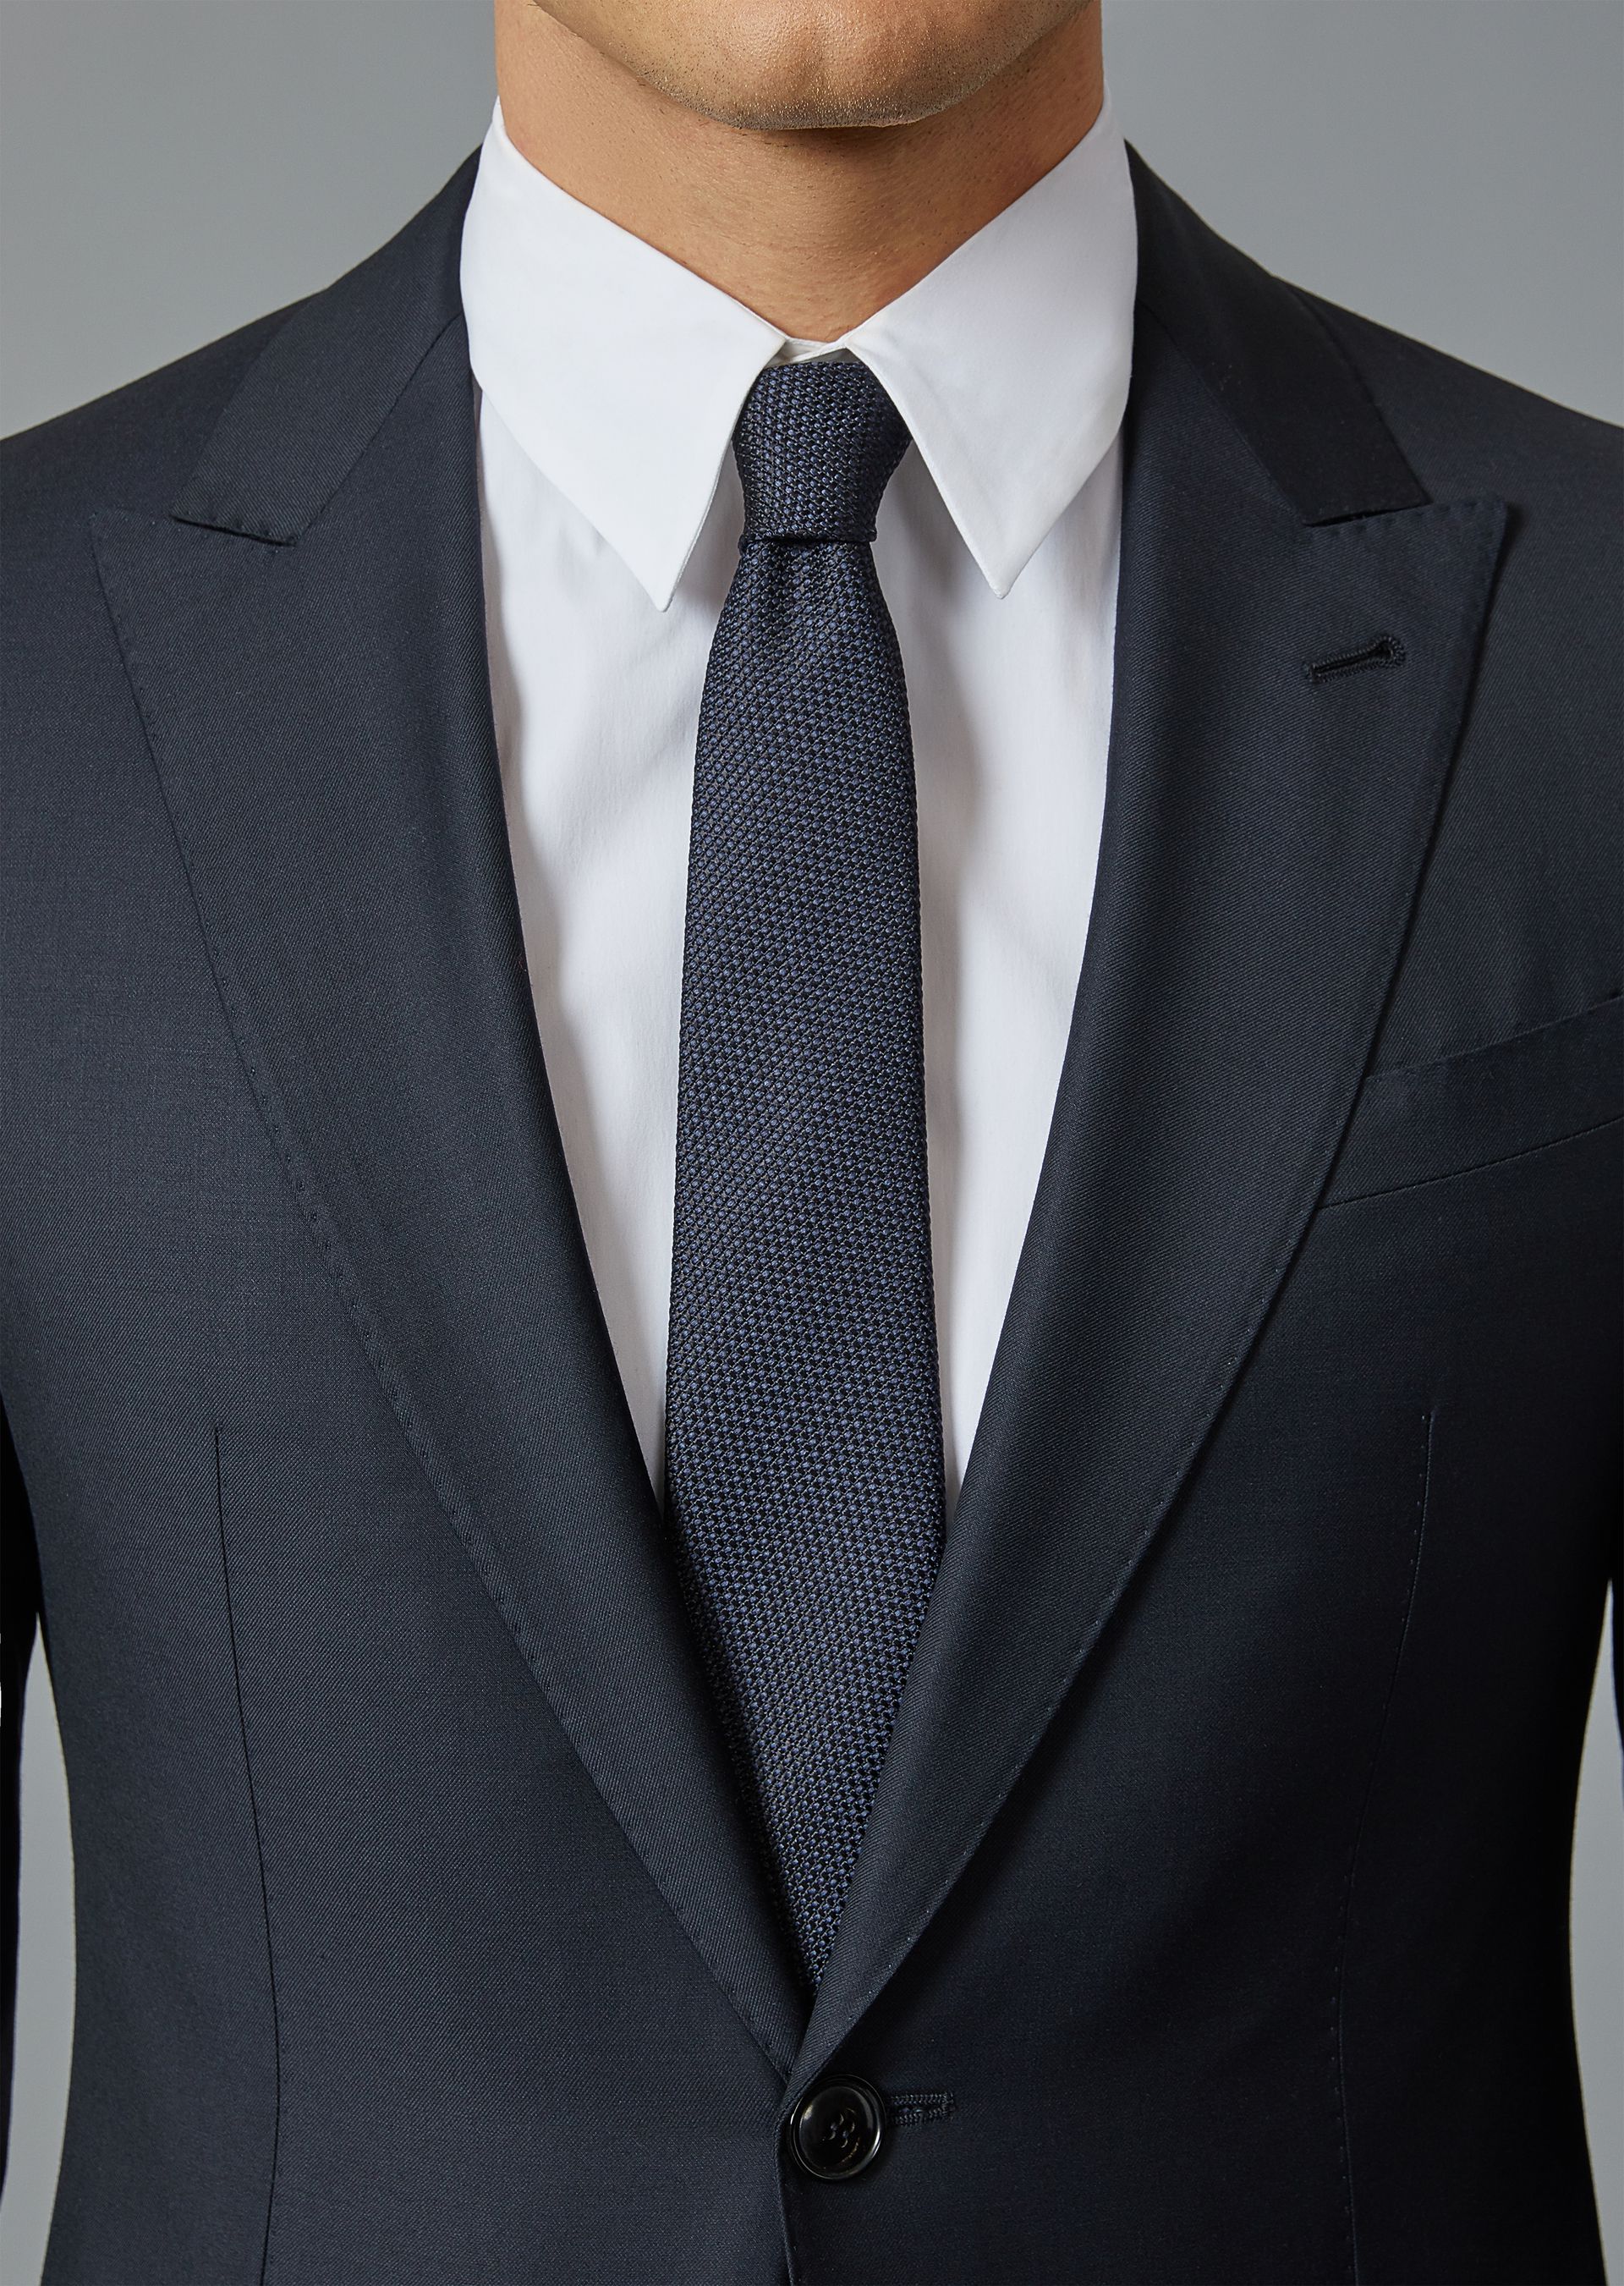 Пиджак мужской с галстуком